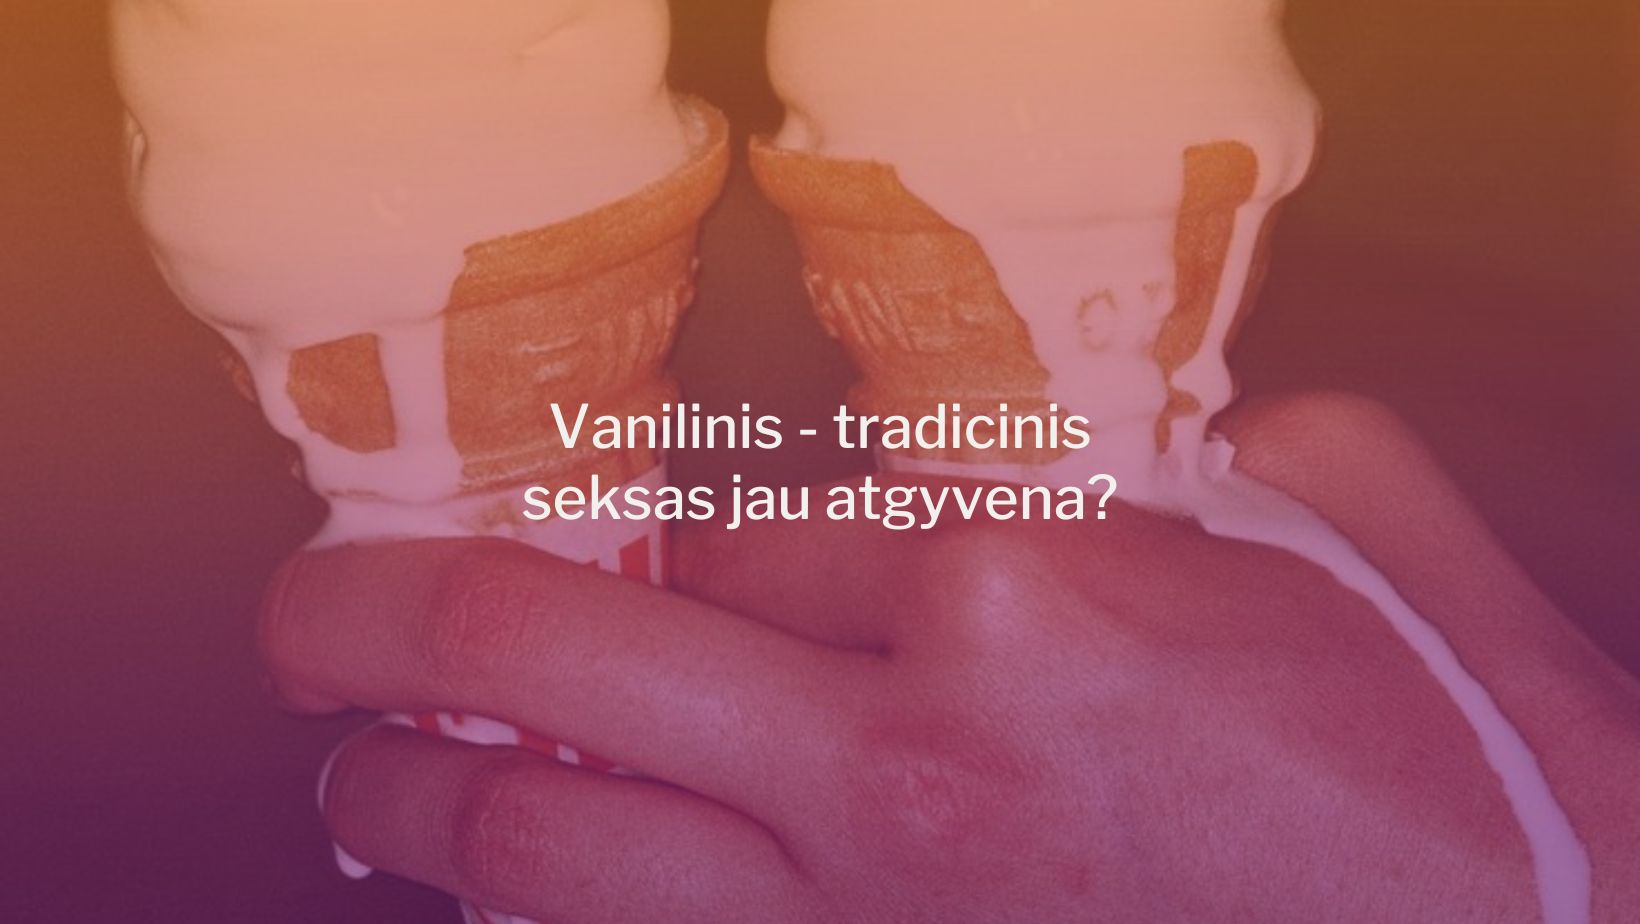 Vanilinis - tradicinis seksas jau atgyvena?